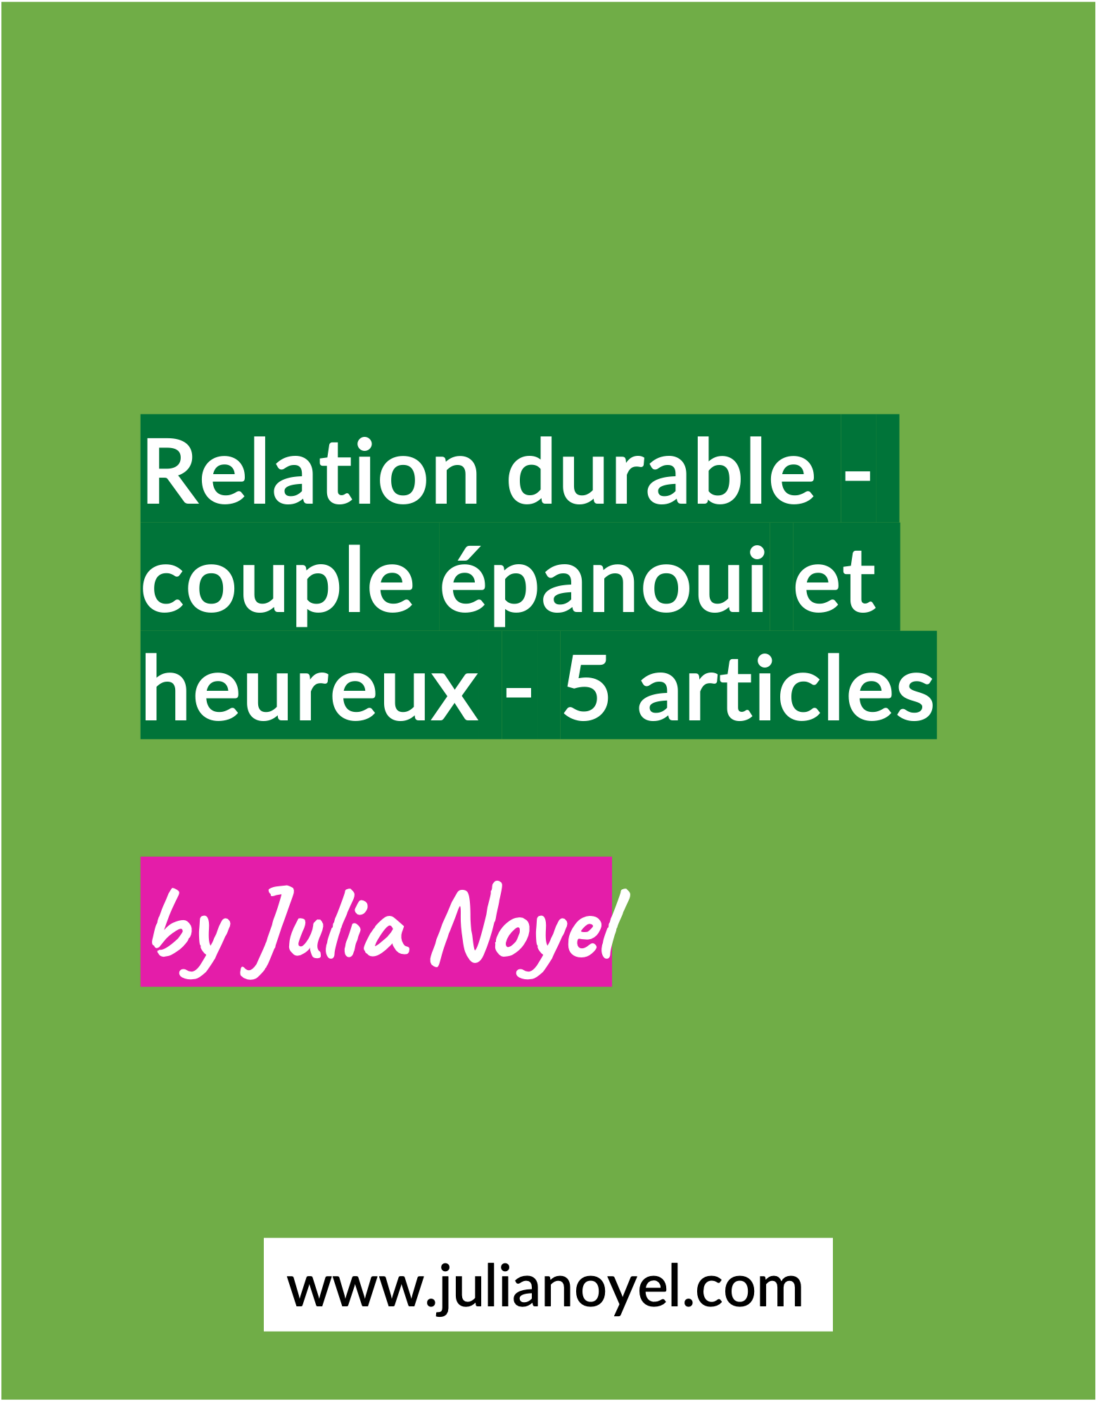 INFP intuitive 5 articles - Relation durable - couple épanoui et heureux by Julia Noyel